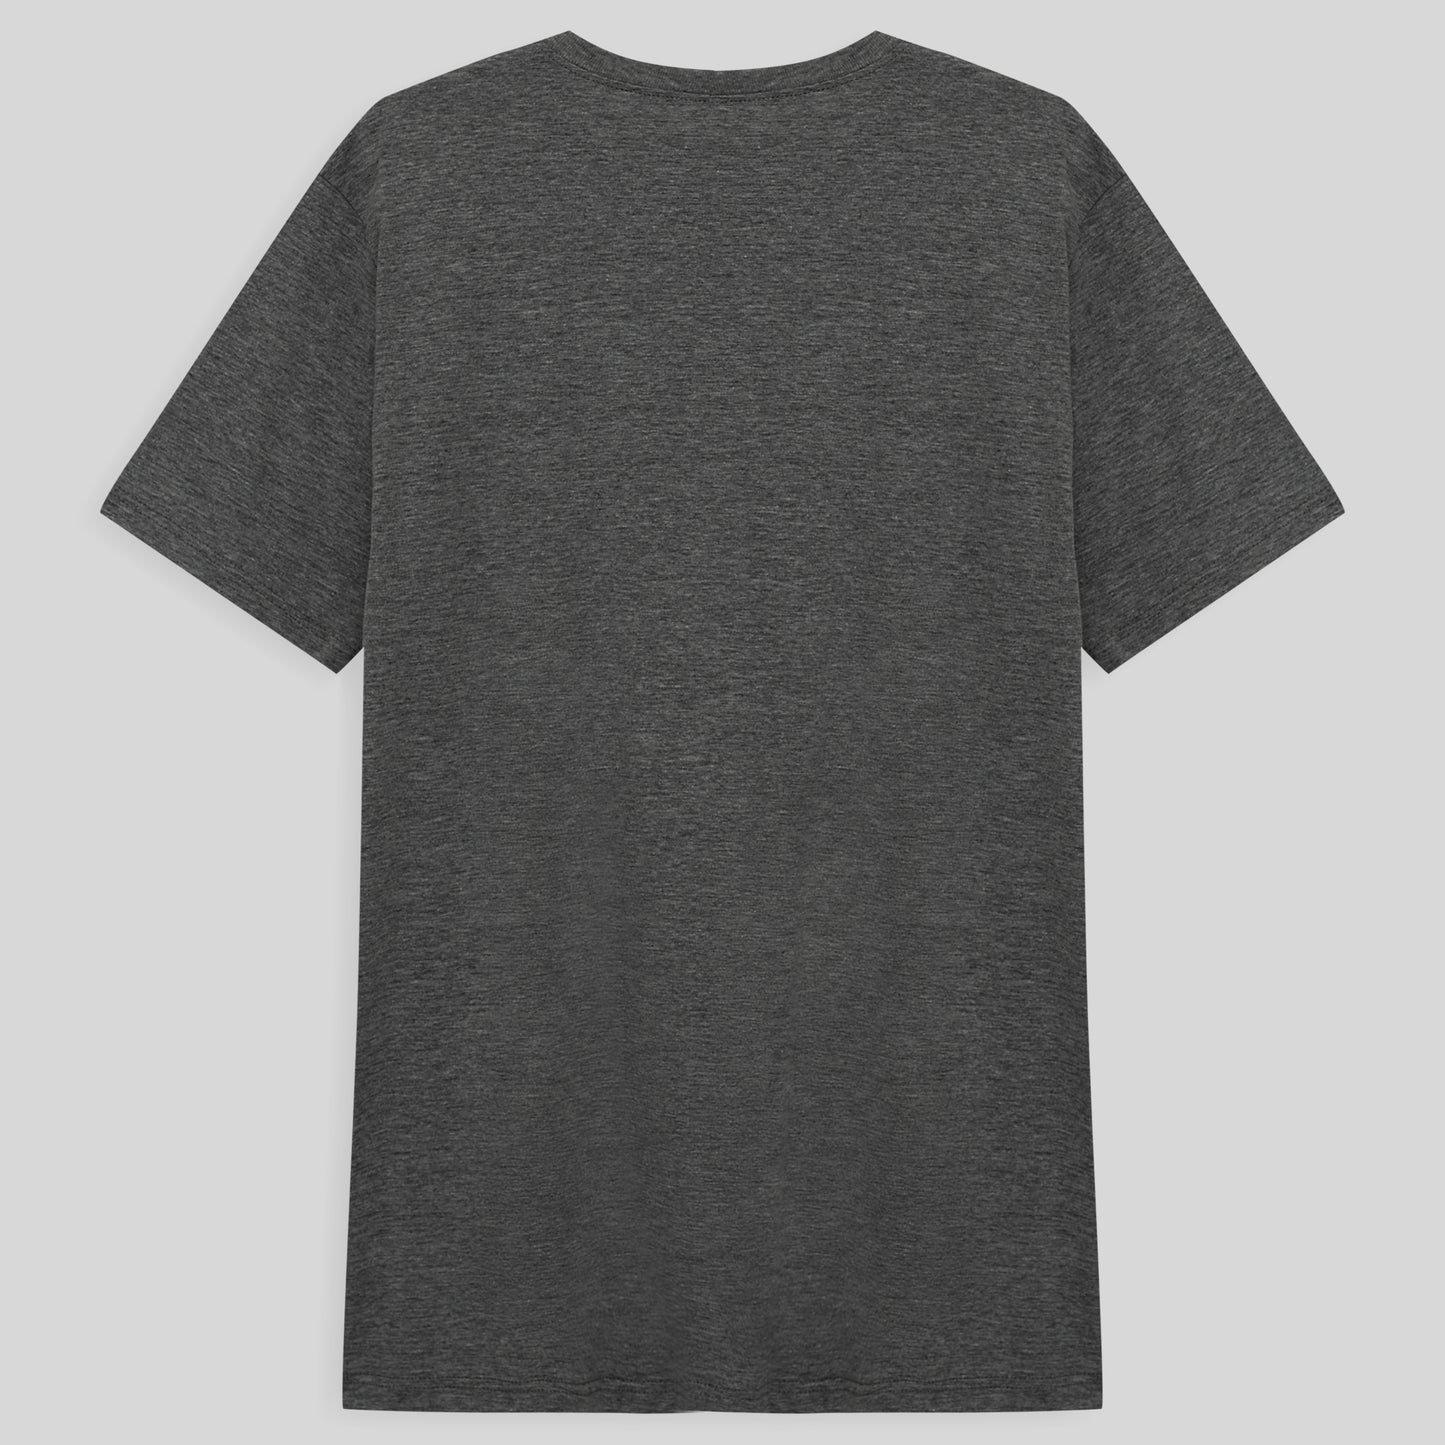 Camiseta Básica Masculina - Mescla Escuro